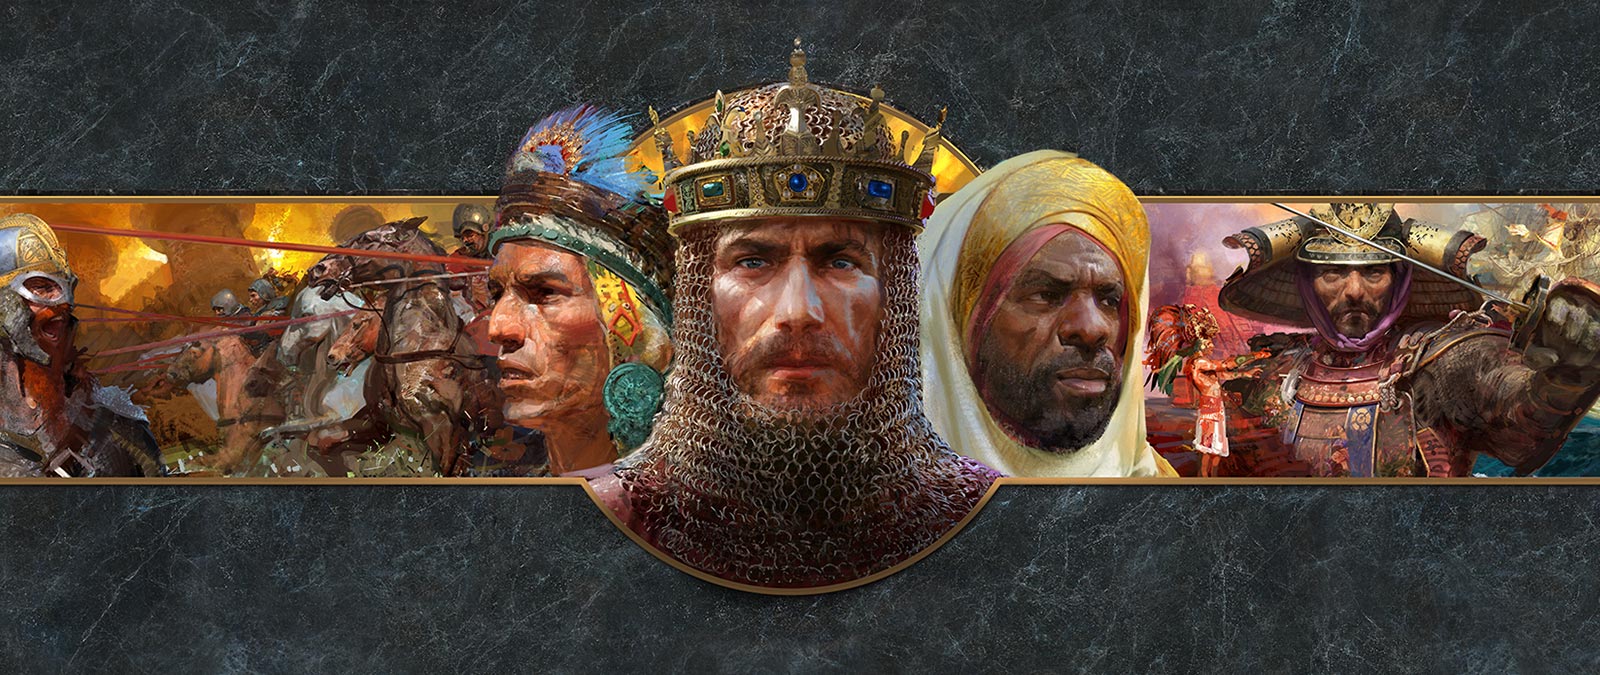 Les portraits de dirigeants de différentes civilisations sont montrés devant des scènes de bataille.